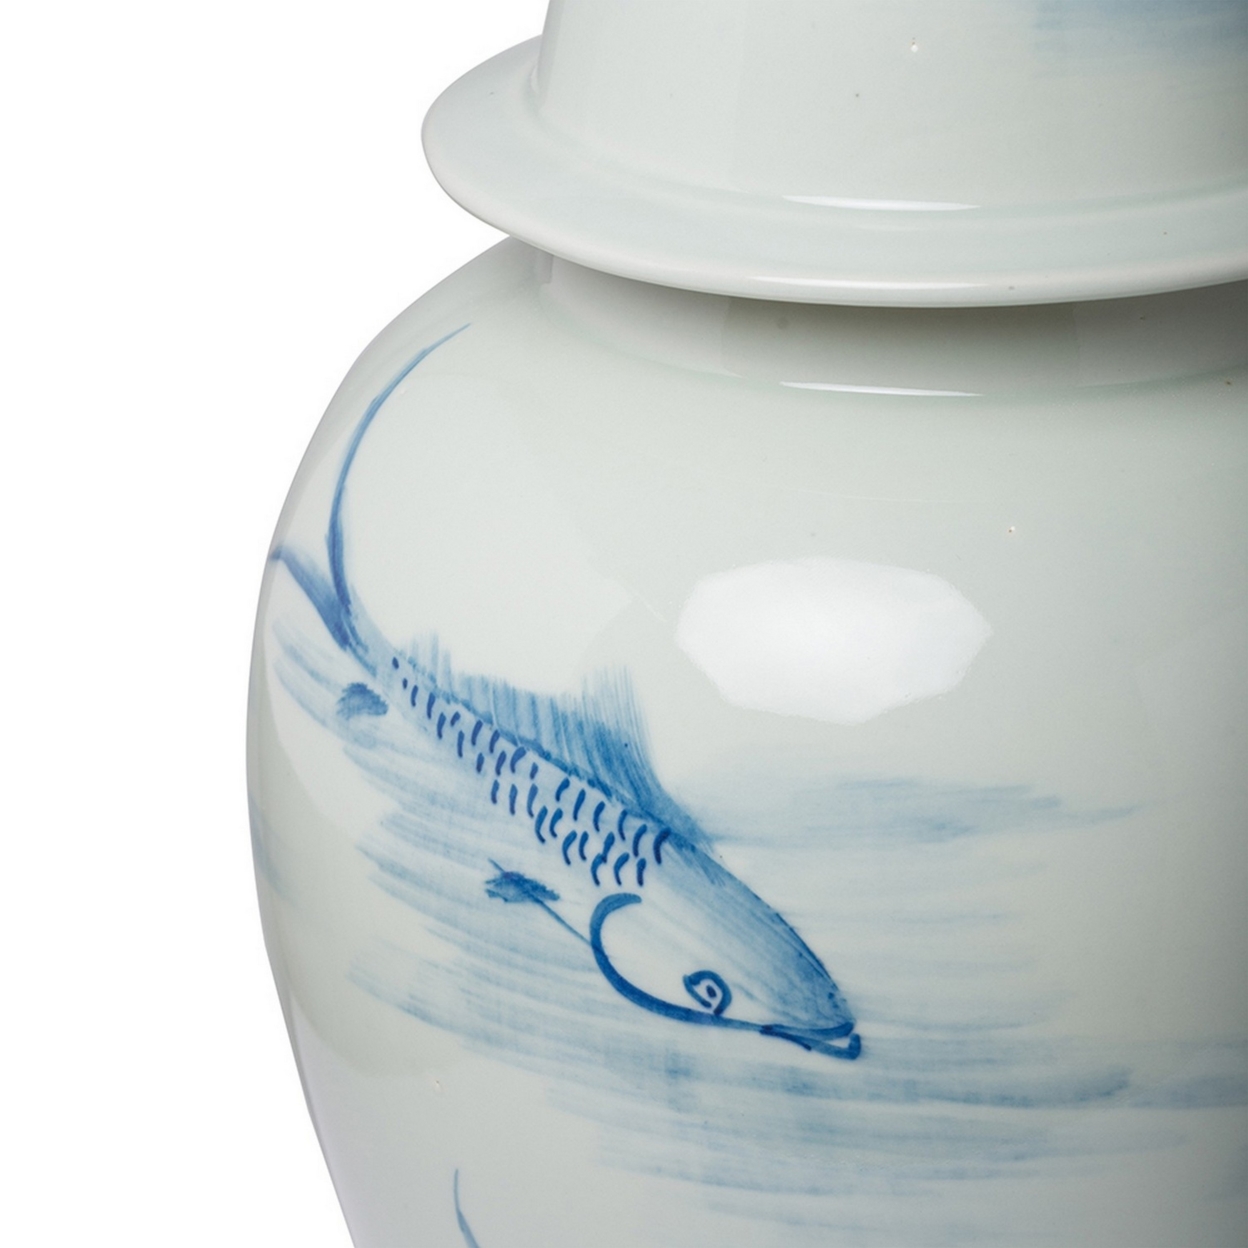 19 Inch Ginger Jar, Lidded, Painted Blue Koi Fish Over White Porcelain- Saltoro Sherpi